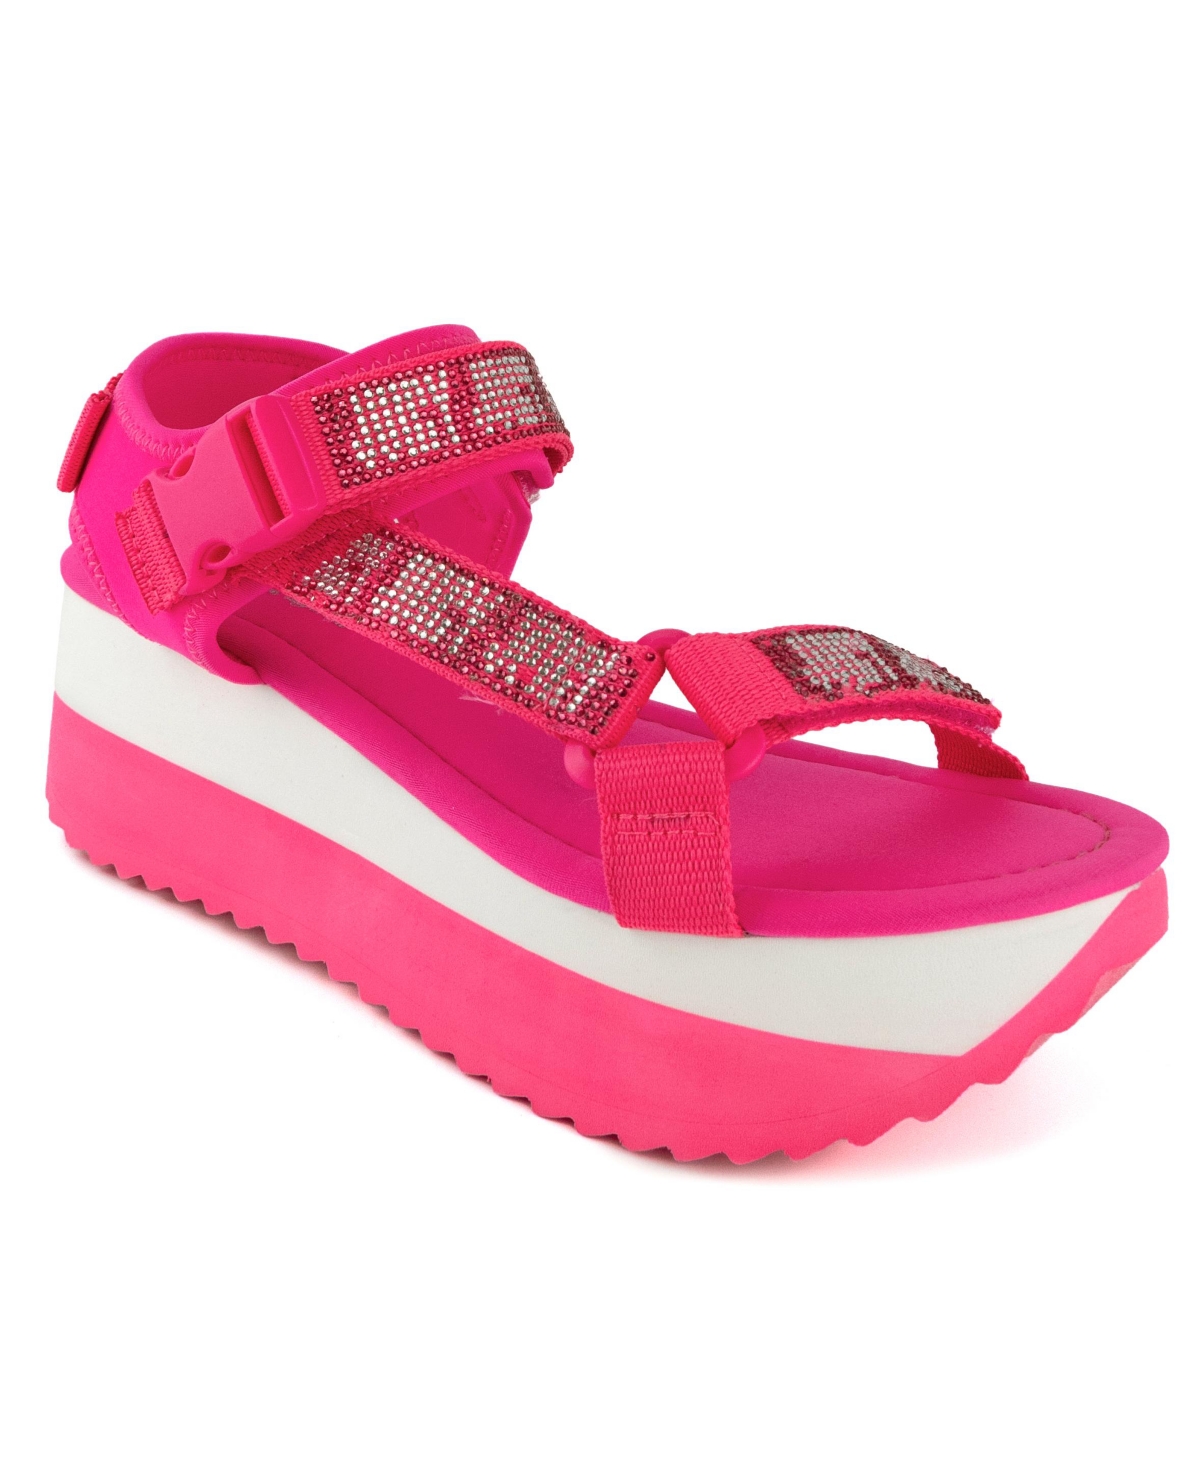 Women's Izora Flatform Sandals - Bright Pink